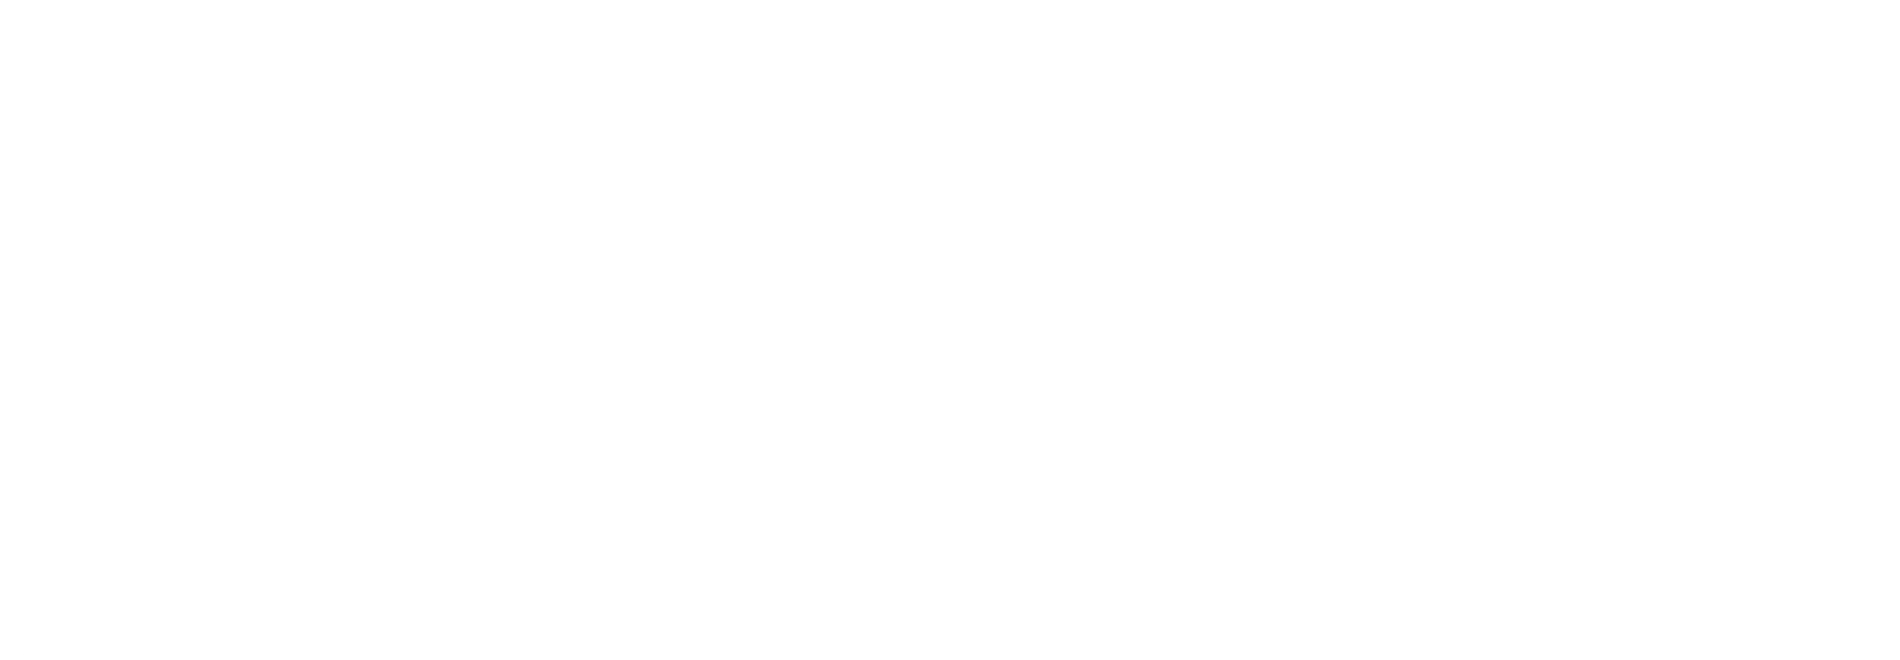 Illustration mit Bohrmaschine, Stethoskop und Nähmaschine